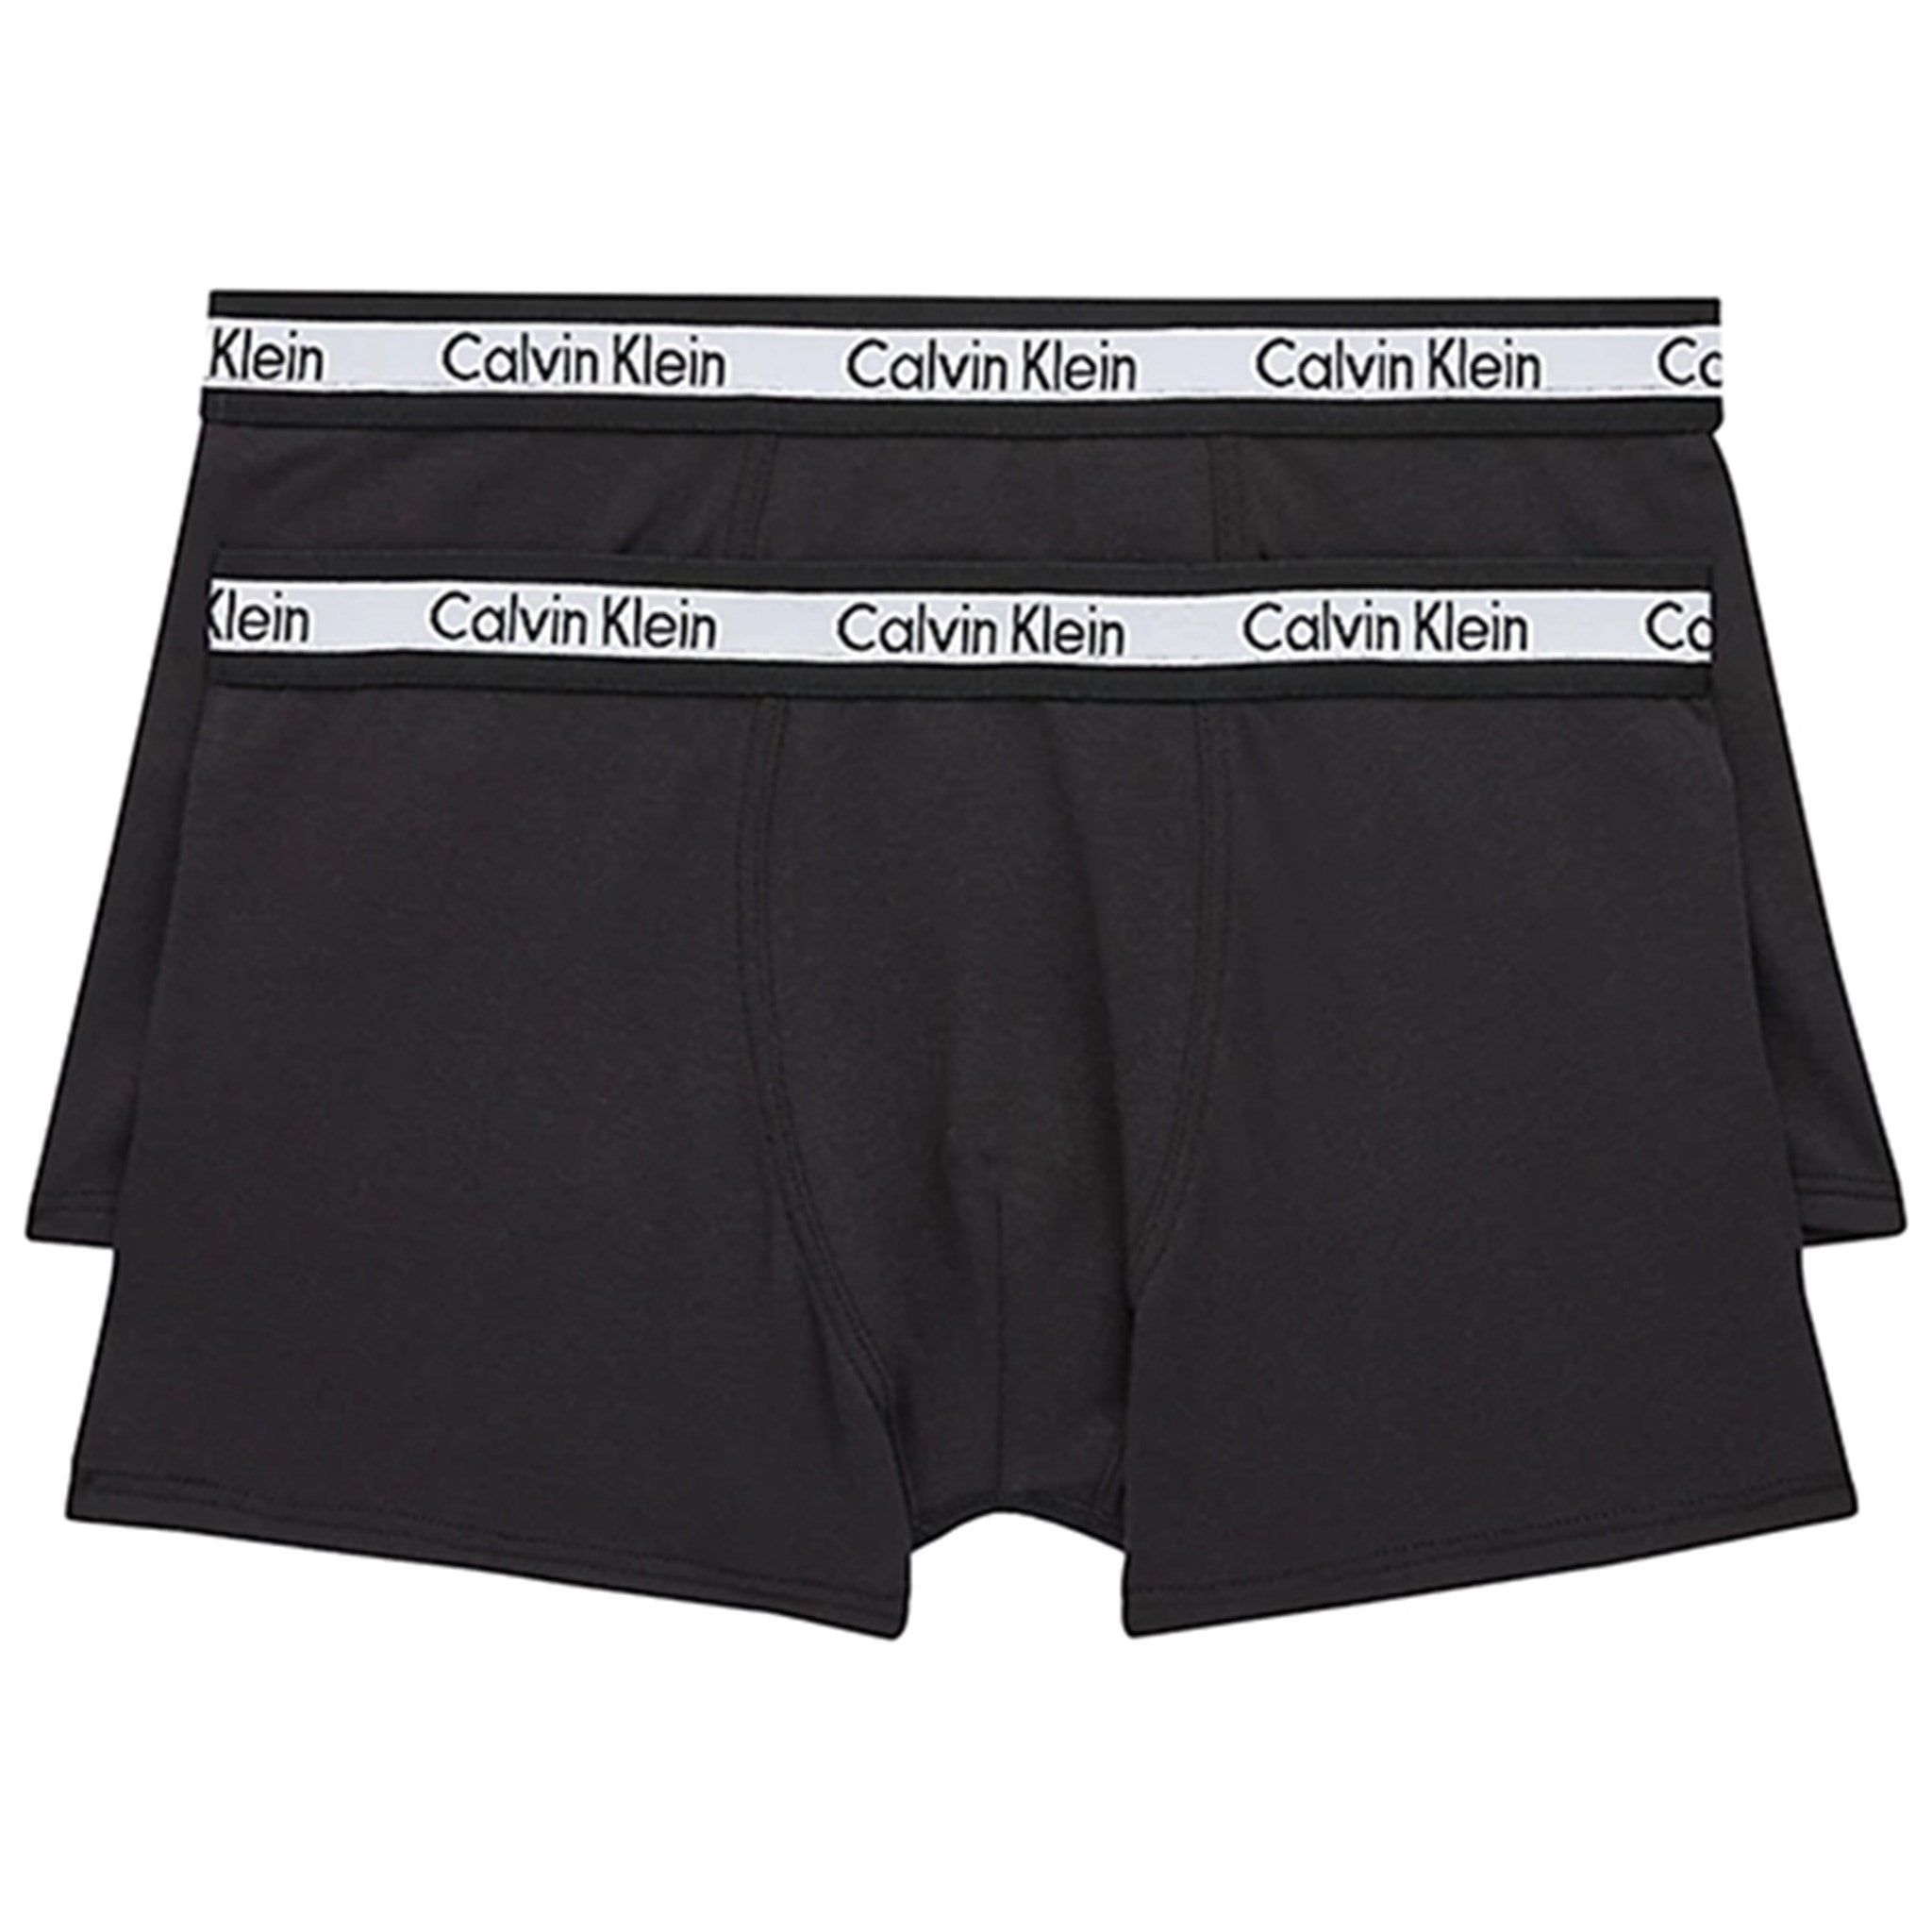 Calvin Klein Boxershorts 2-Pack Black